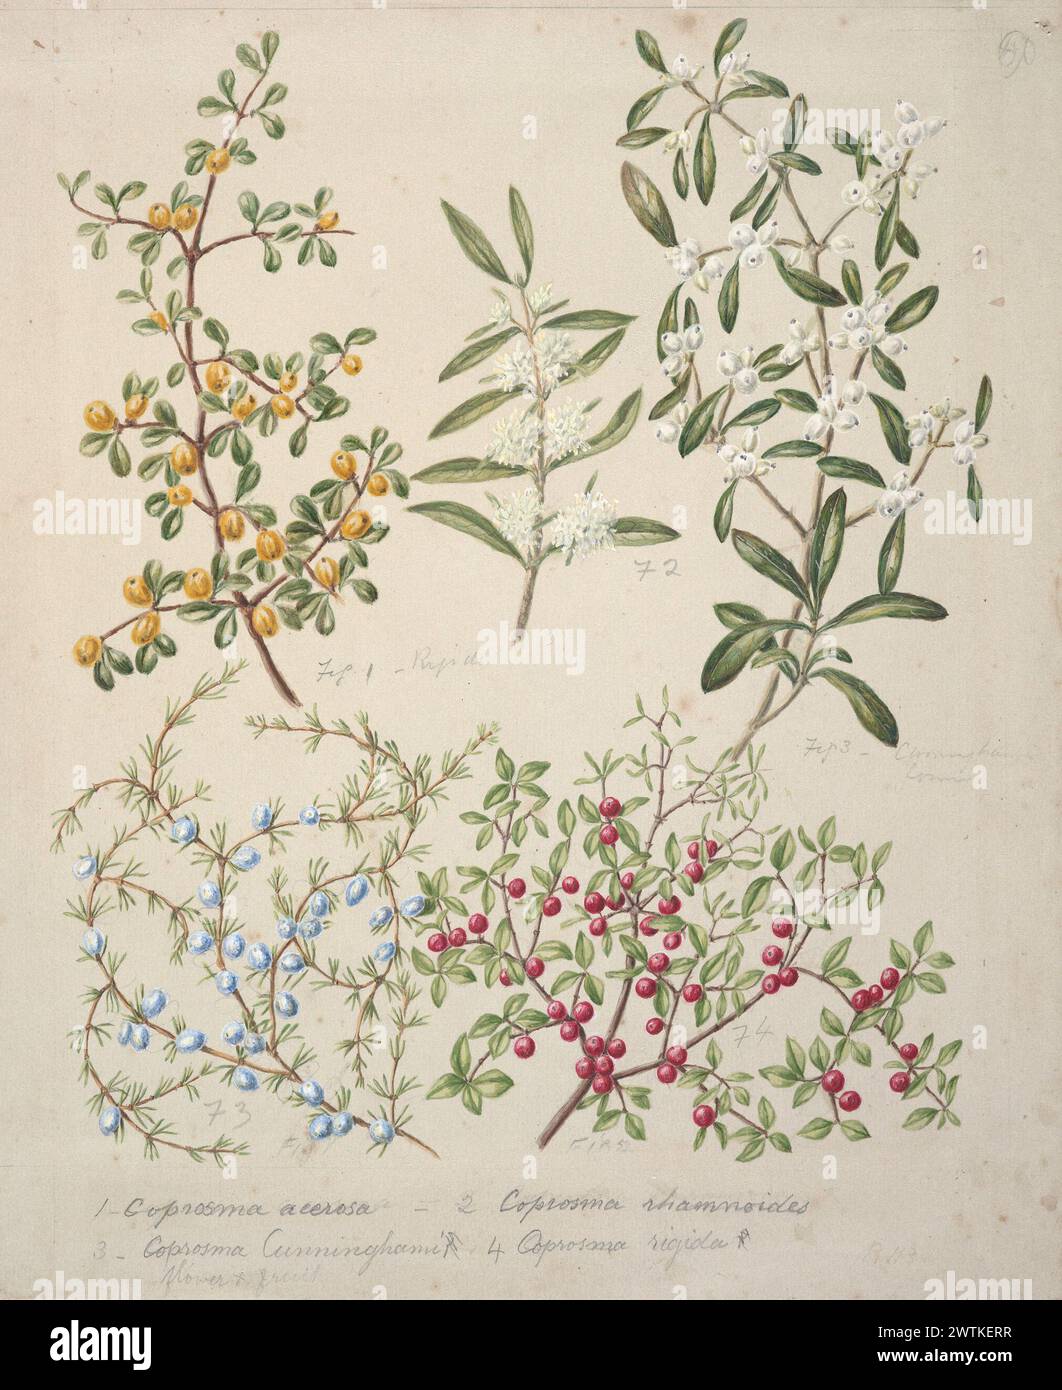 [Coprosma acerosa; Coprosma rhamnoides; Coprosma cunninghami; Coprosma rigida.] watercolours, works on paper Stock Photo